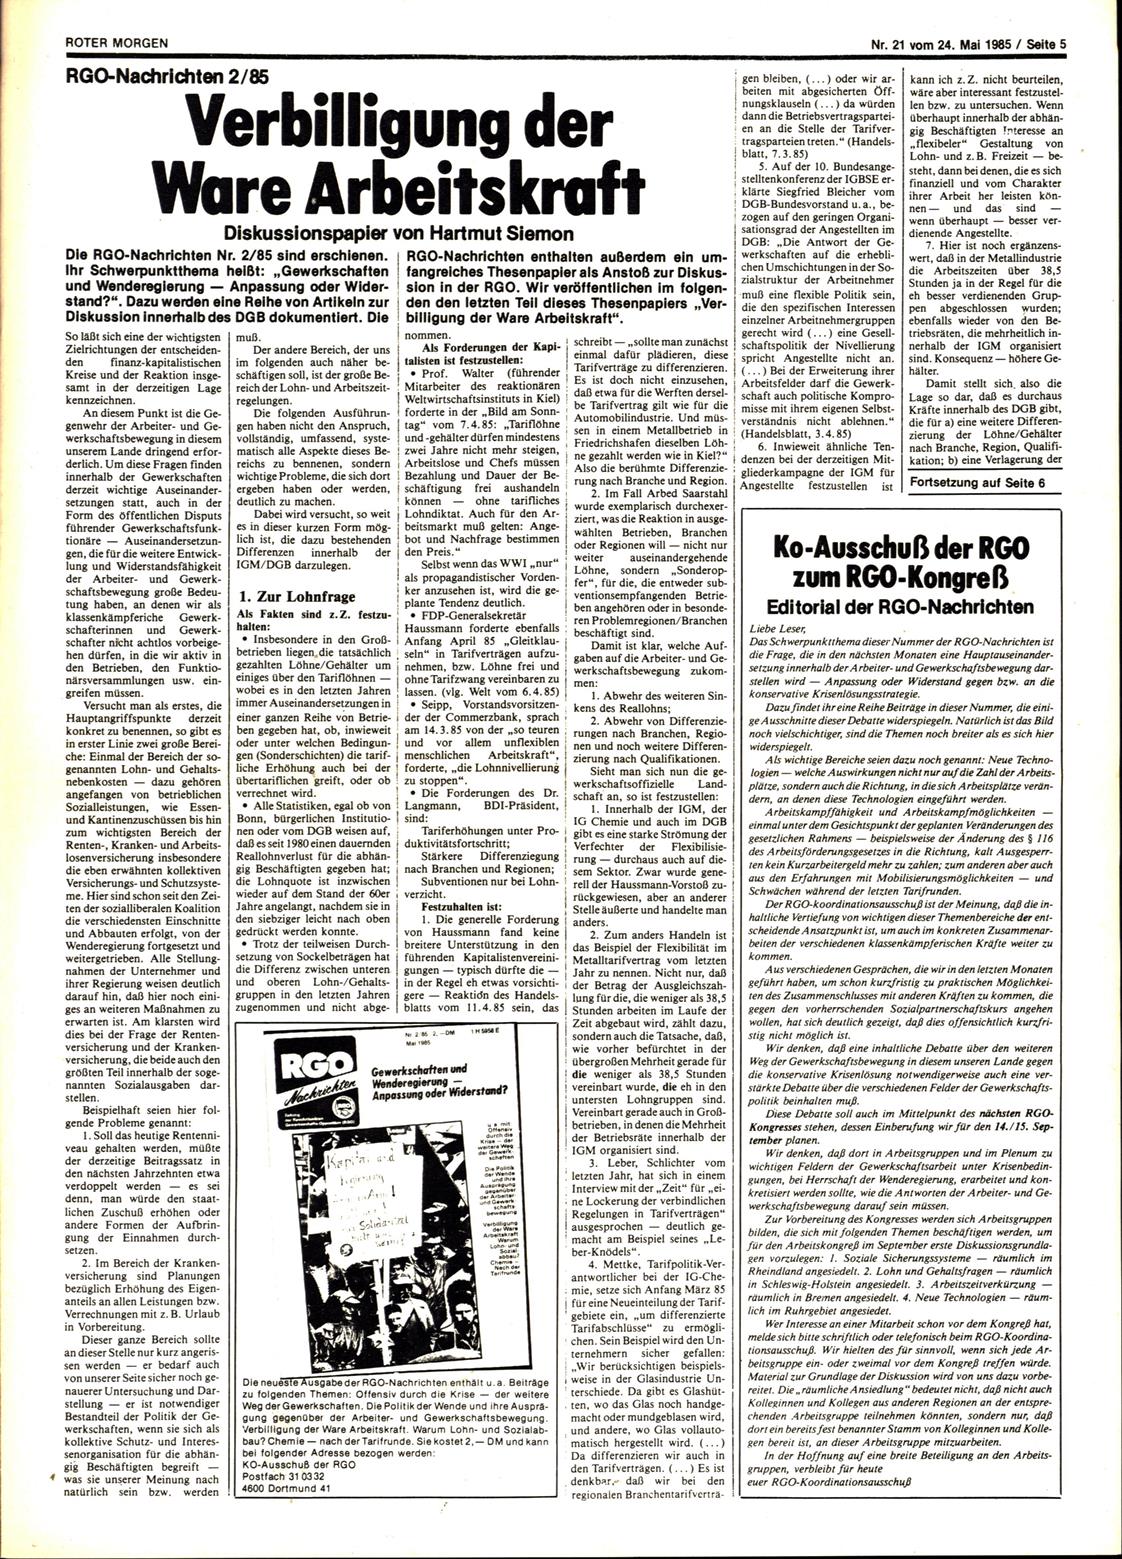 Roter Morgen, 19. Jg., 24. Mai 1985, Nr. 21, Seite 5